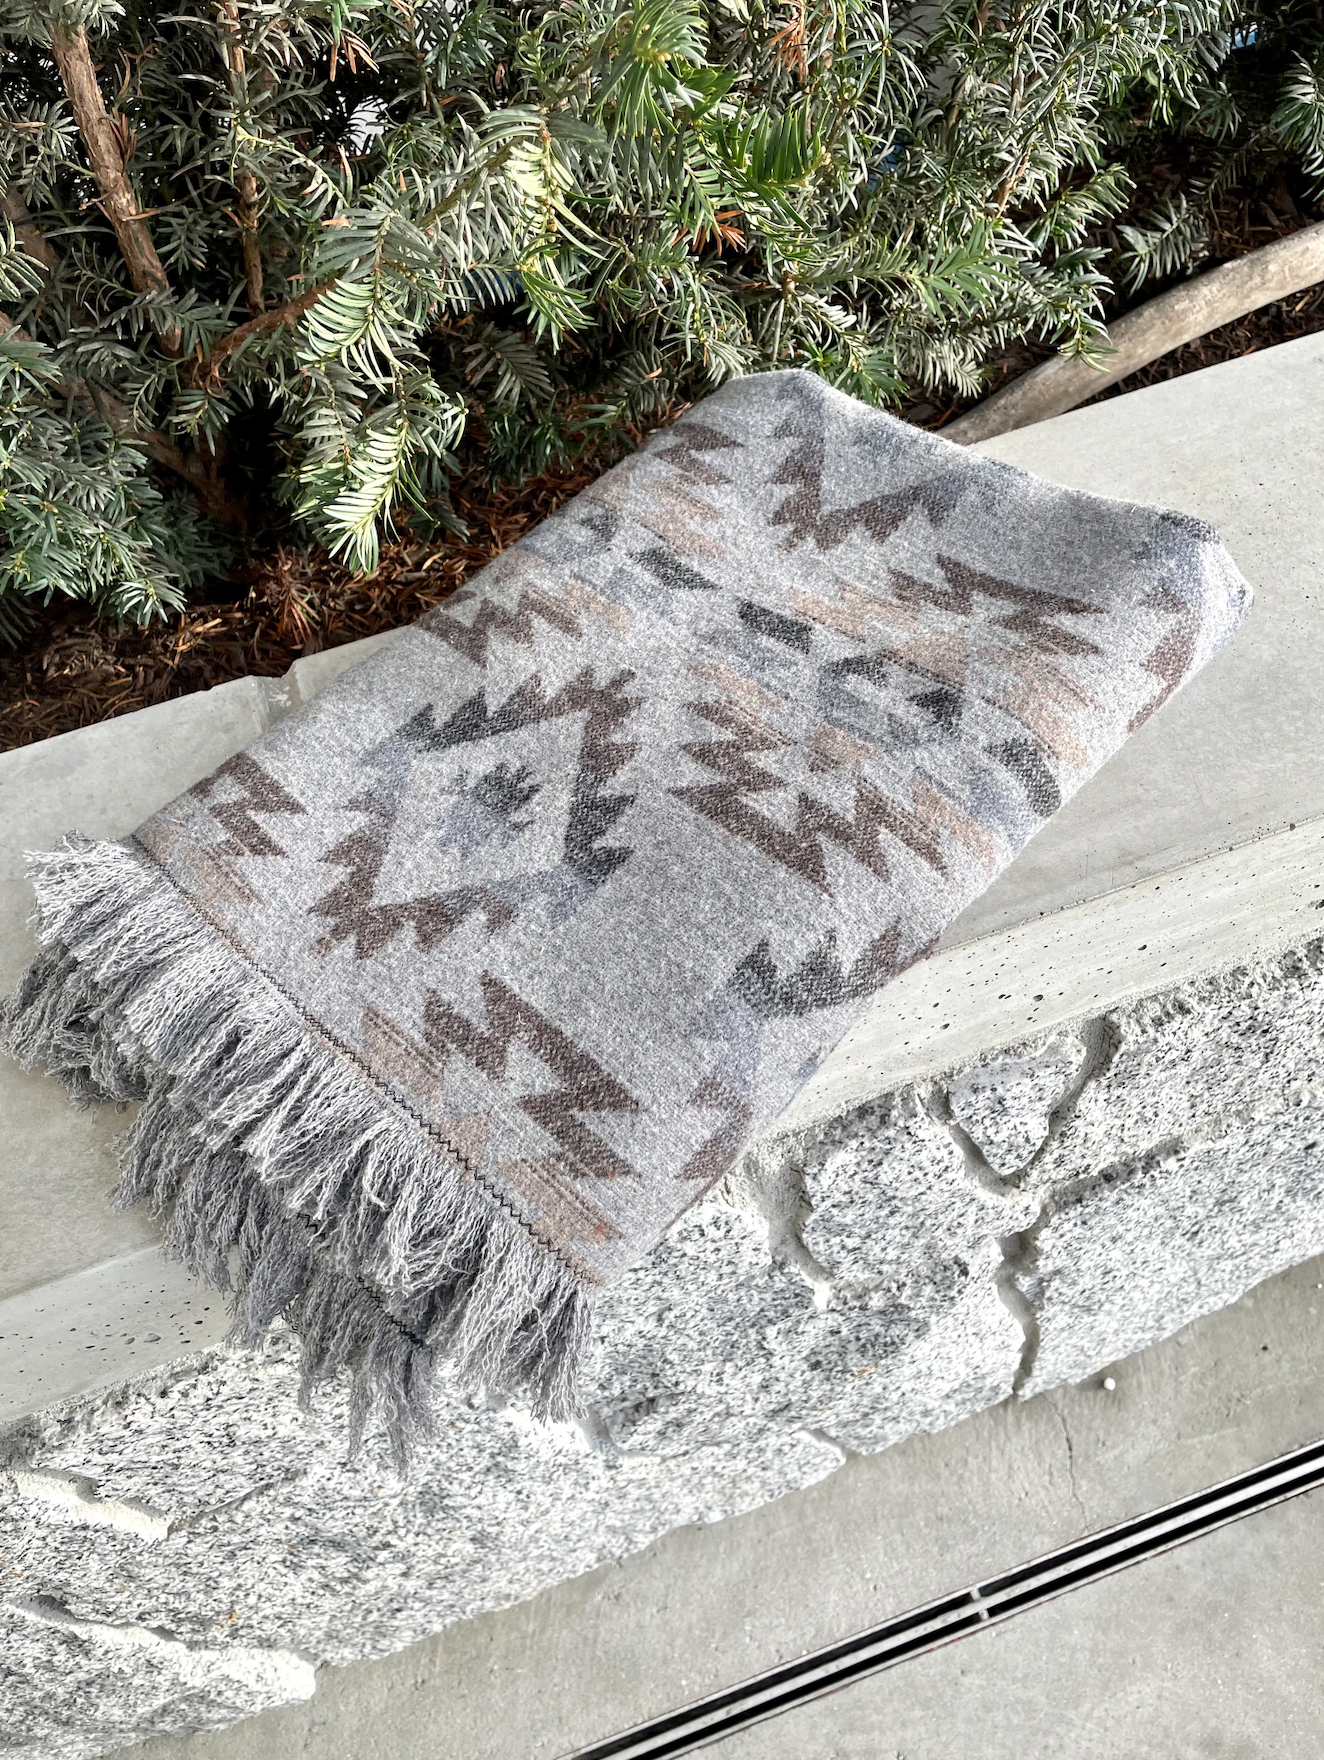 west coast alchemist handmade blankets baskets in abbotsford fraser valley british columbia canada 16